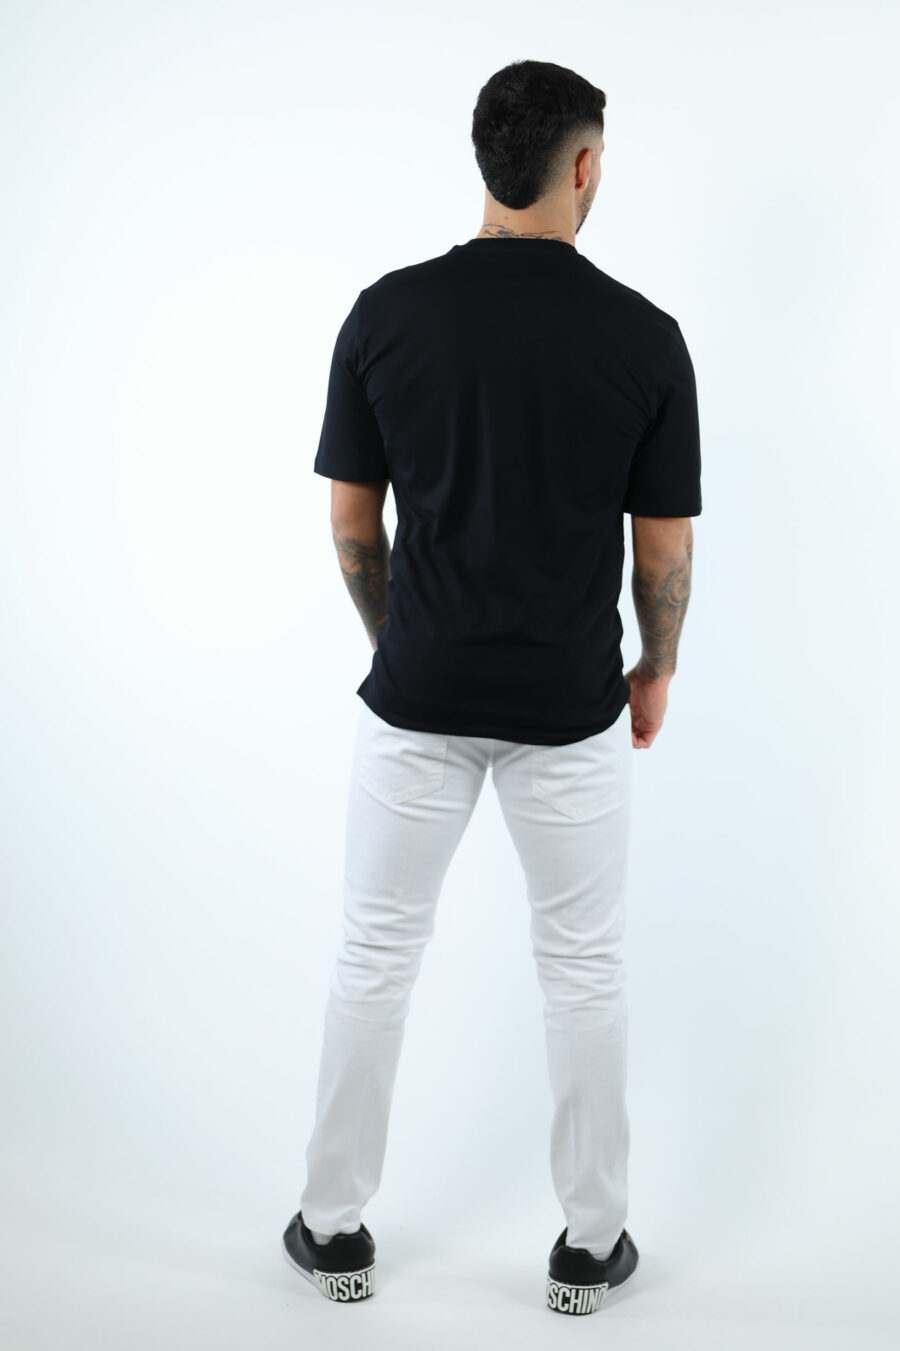 Camiseta negra con maxilogo oso en puntos monocromático - 107207